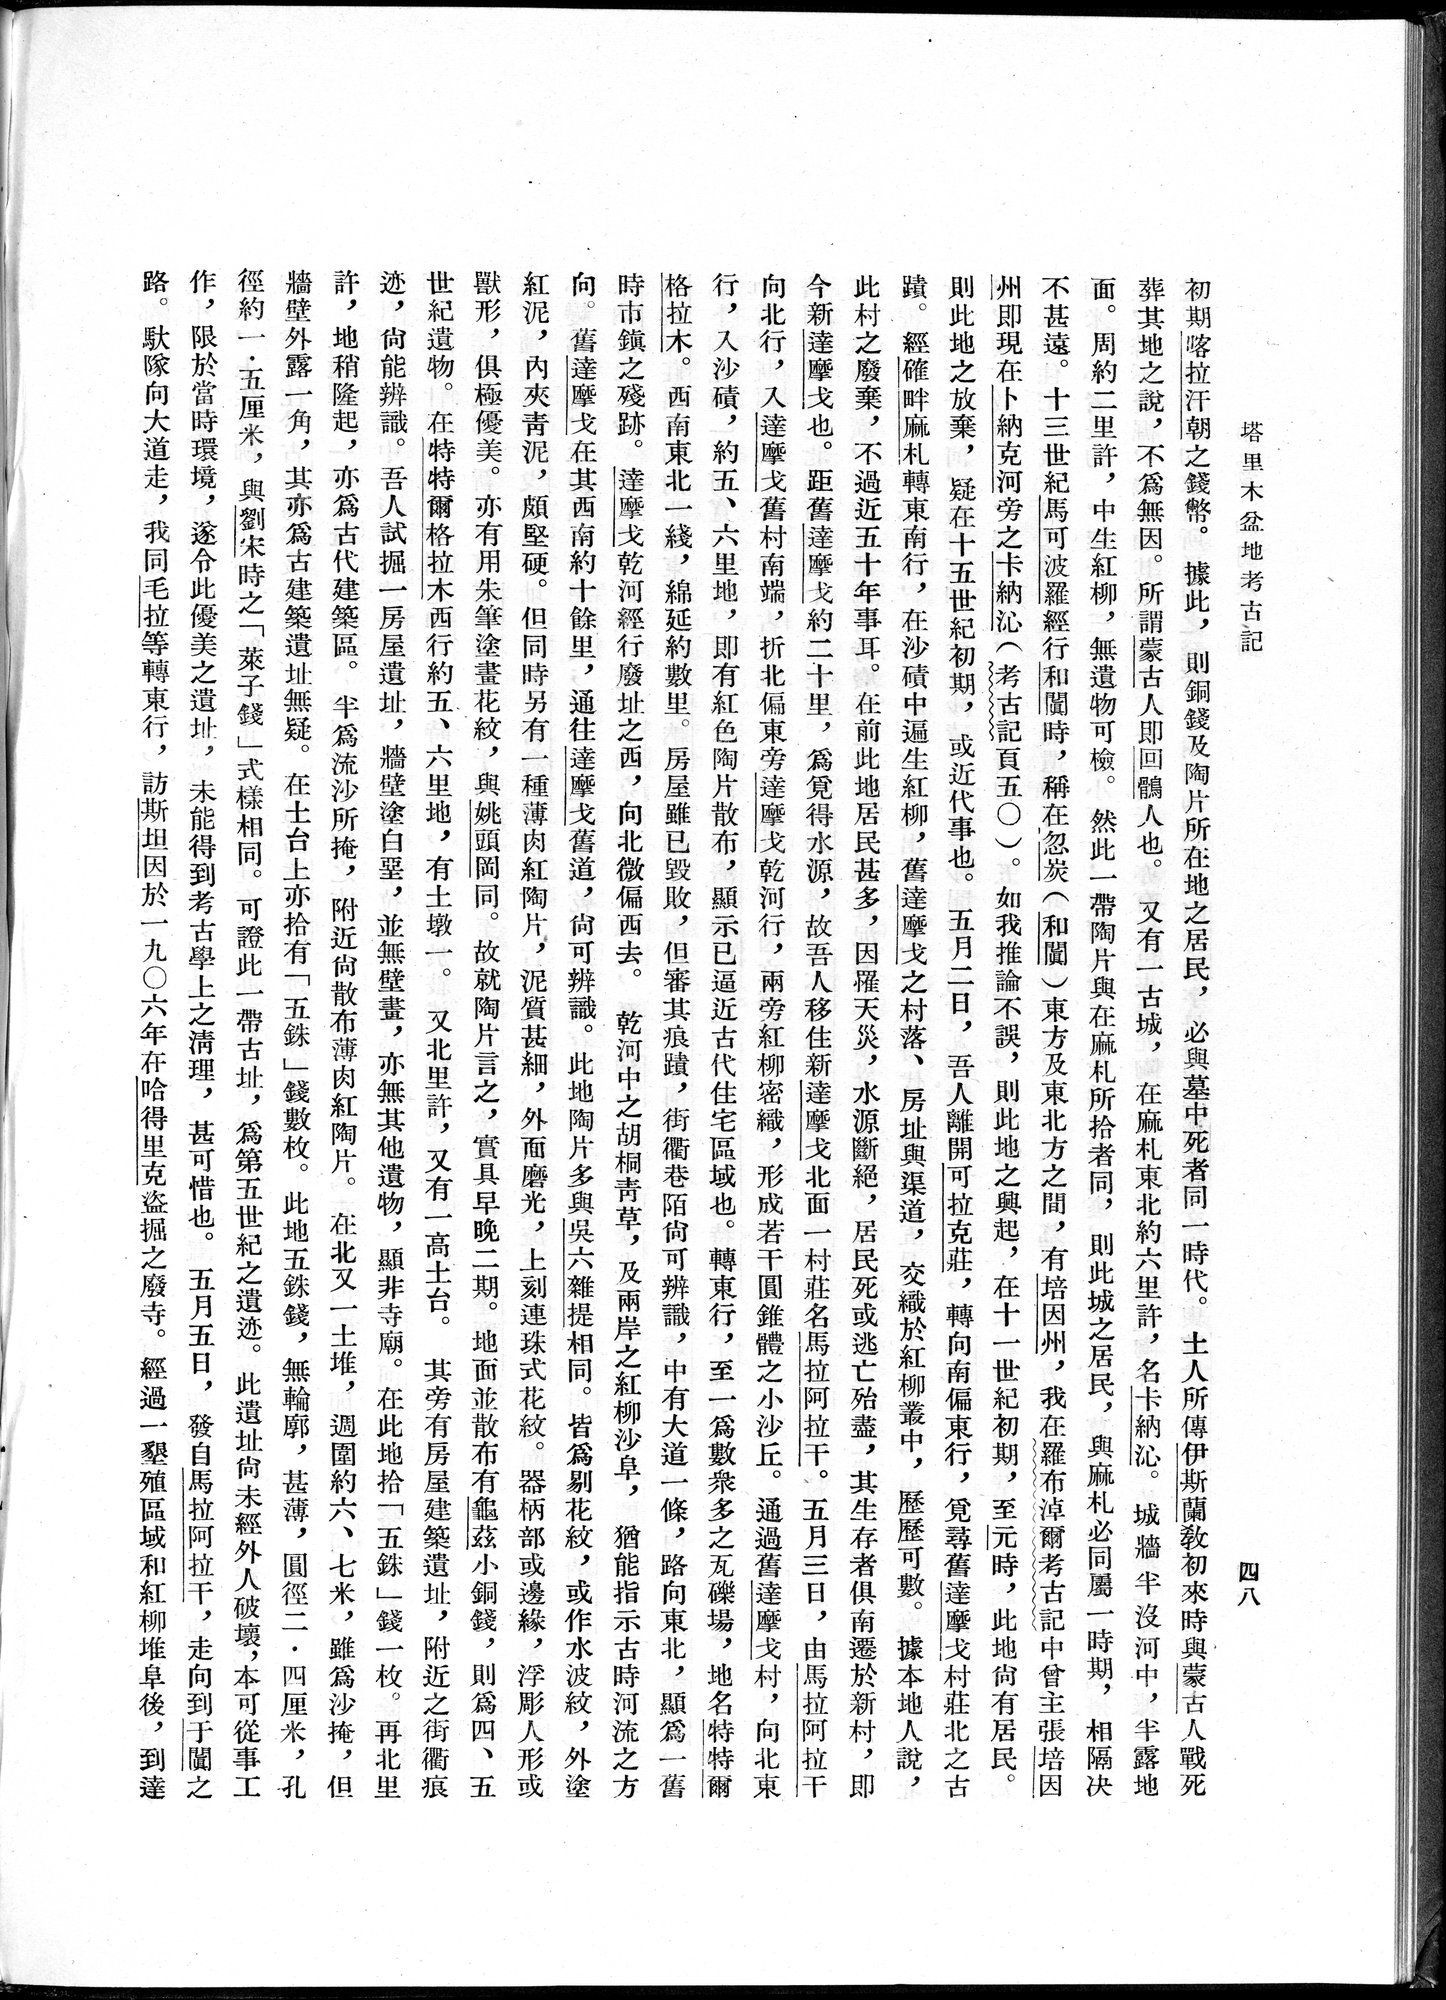 塔里木盆地考古記 : vol.1 / Page 72 (Grayscale High Resolution Image)